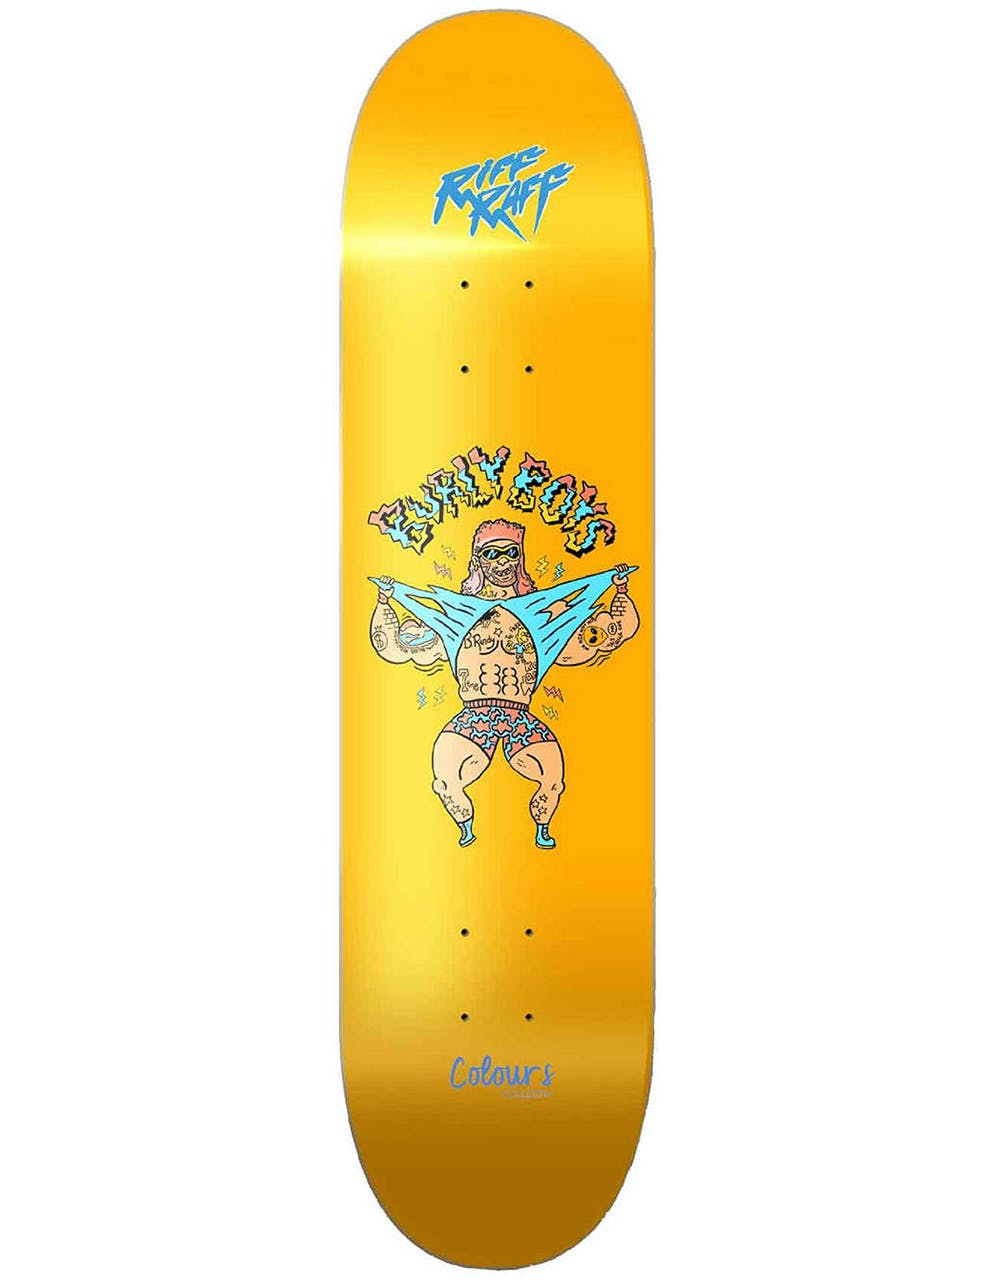 Colours Collectiv Burly Boys Skateboard Deck - 8.5"